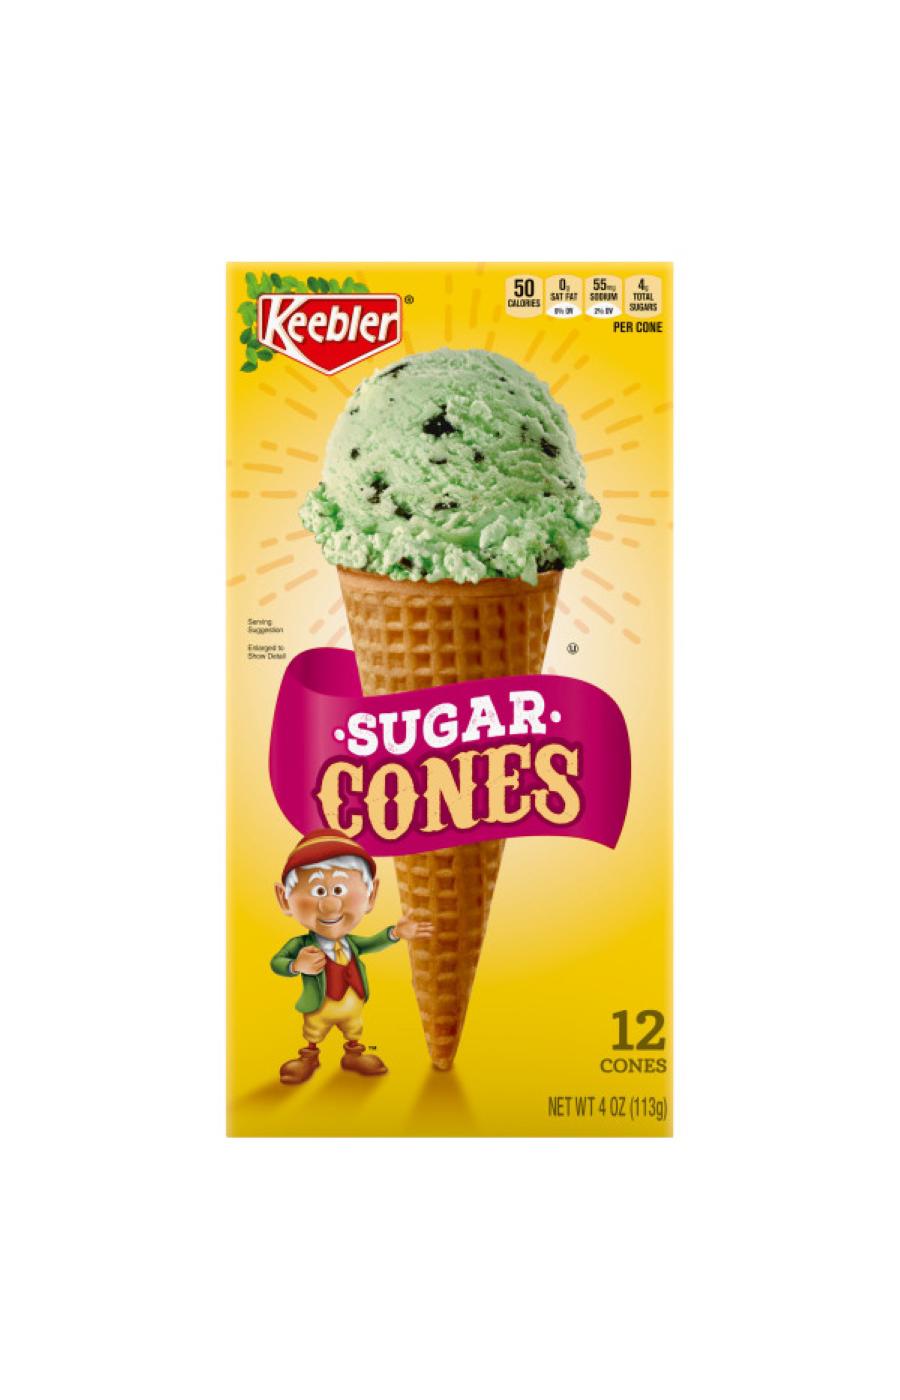 Keebler Sugar Cones; image 1 of 2